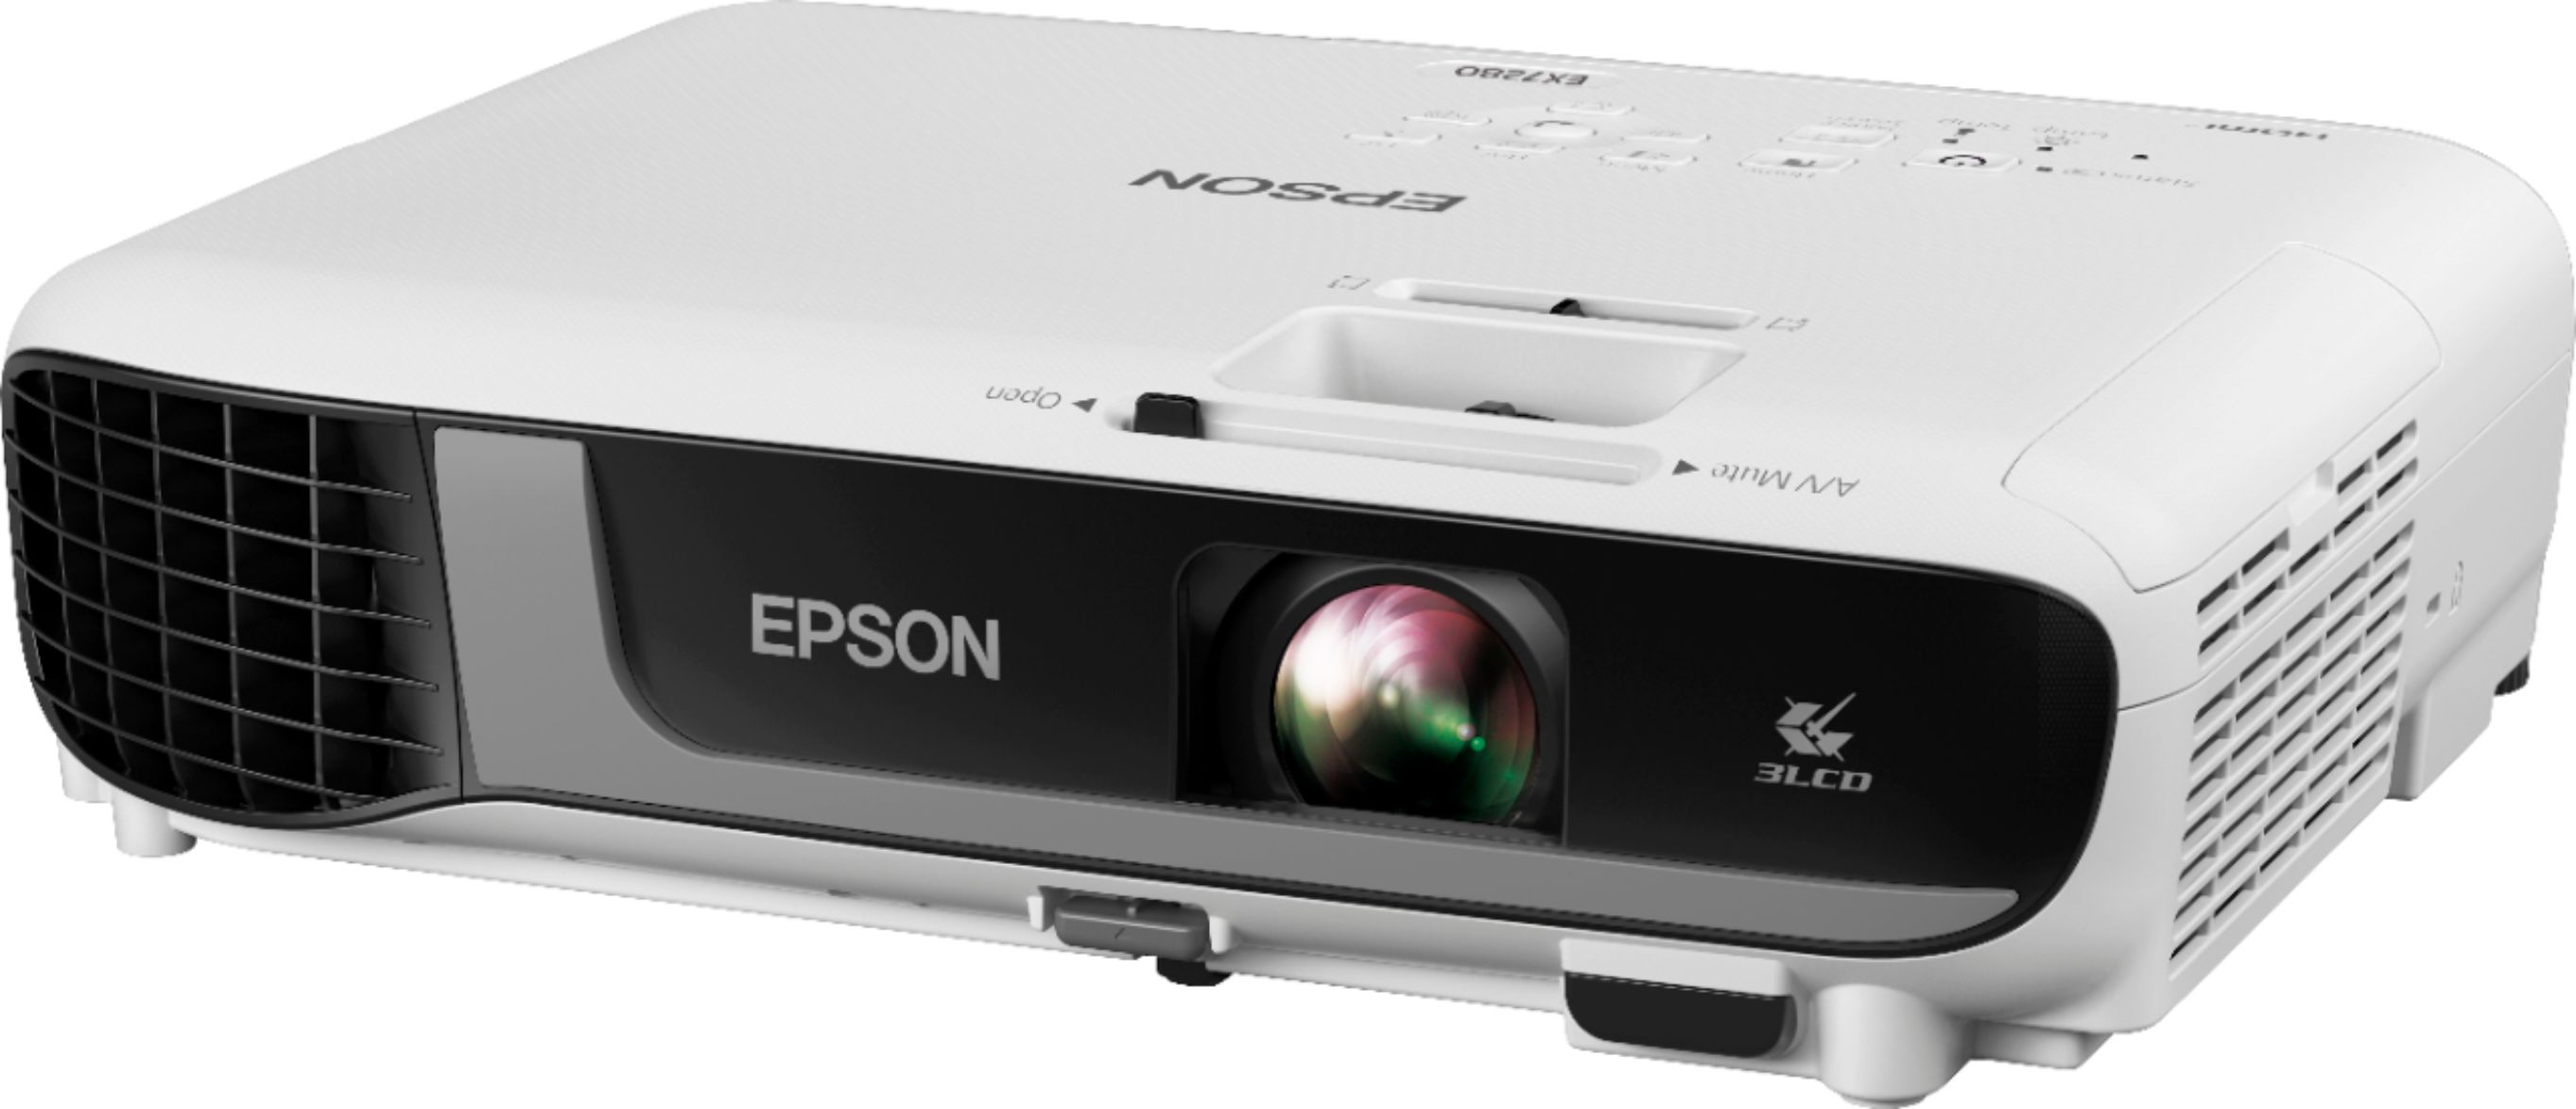 Epson Pro EX7280 3LCD WXGA Projector with Built-in Speaker White V11HA02020  - Best Buy